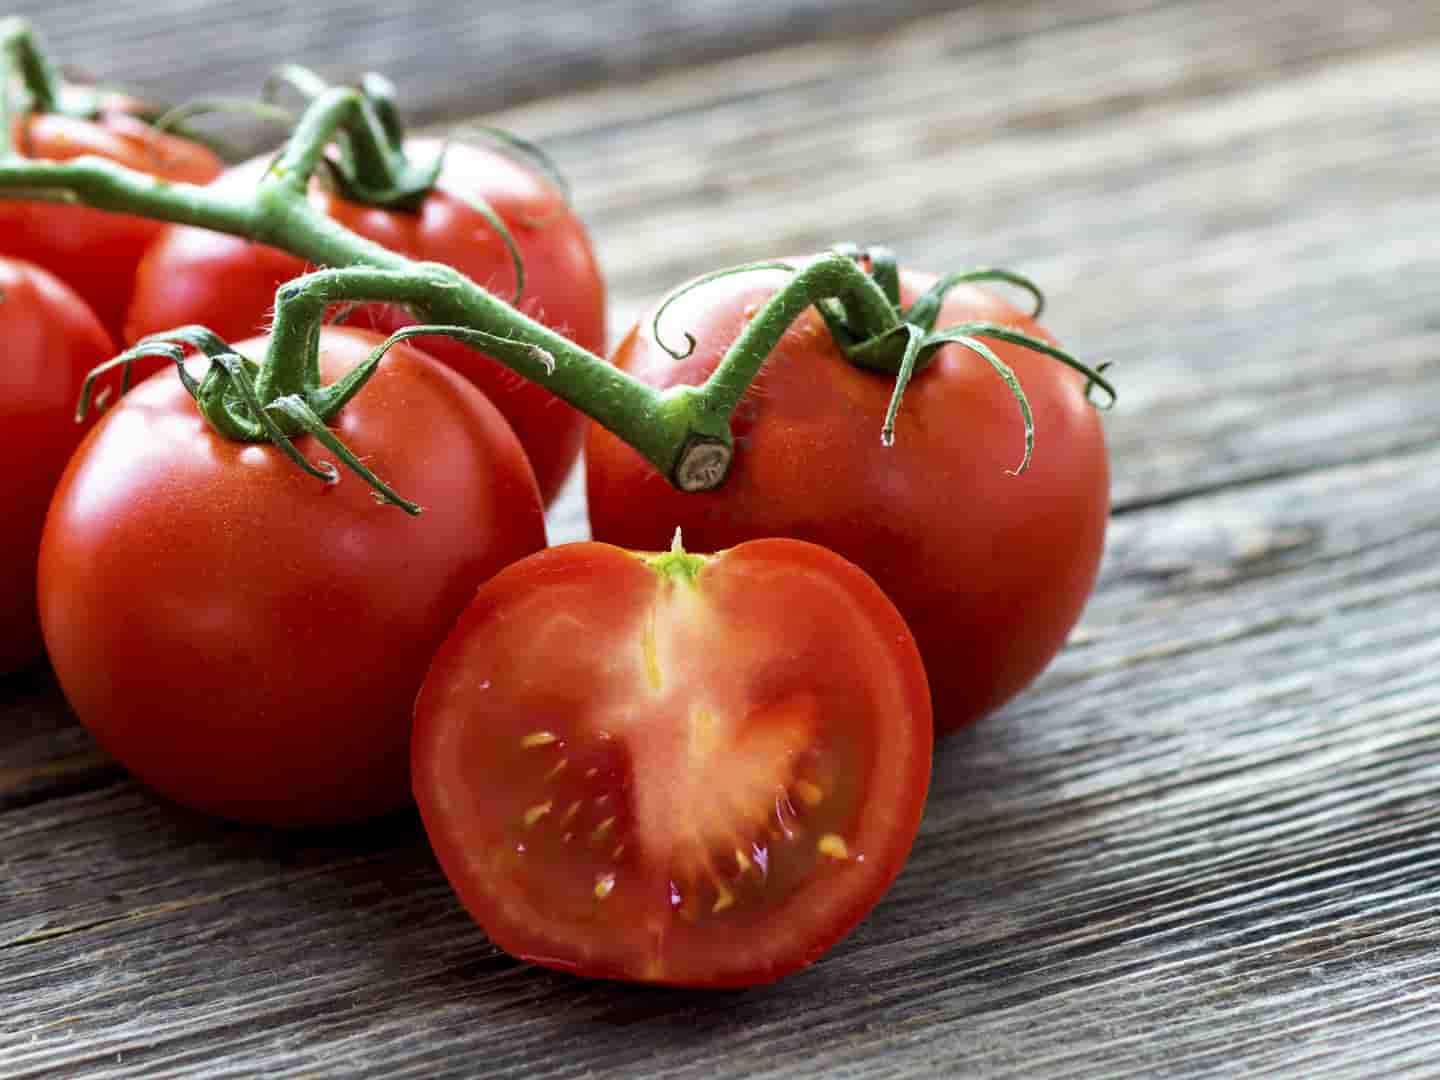 تصدير الطماطم بأسهل ظروف وسعر مناسب لكم